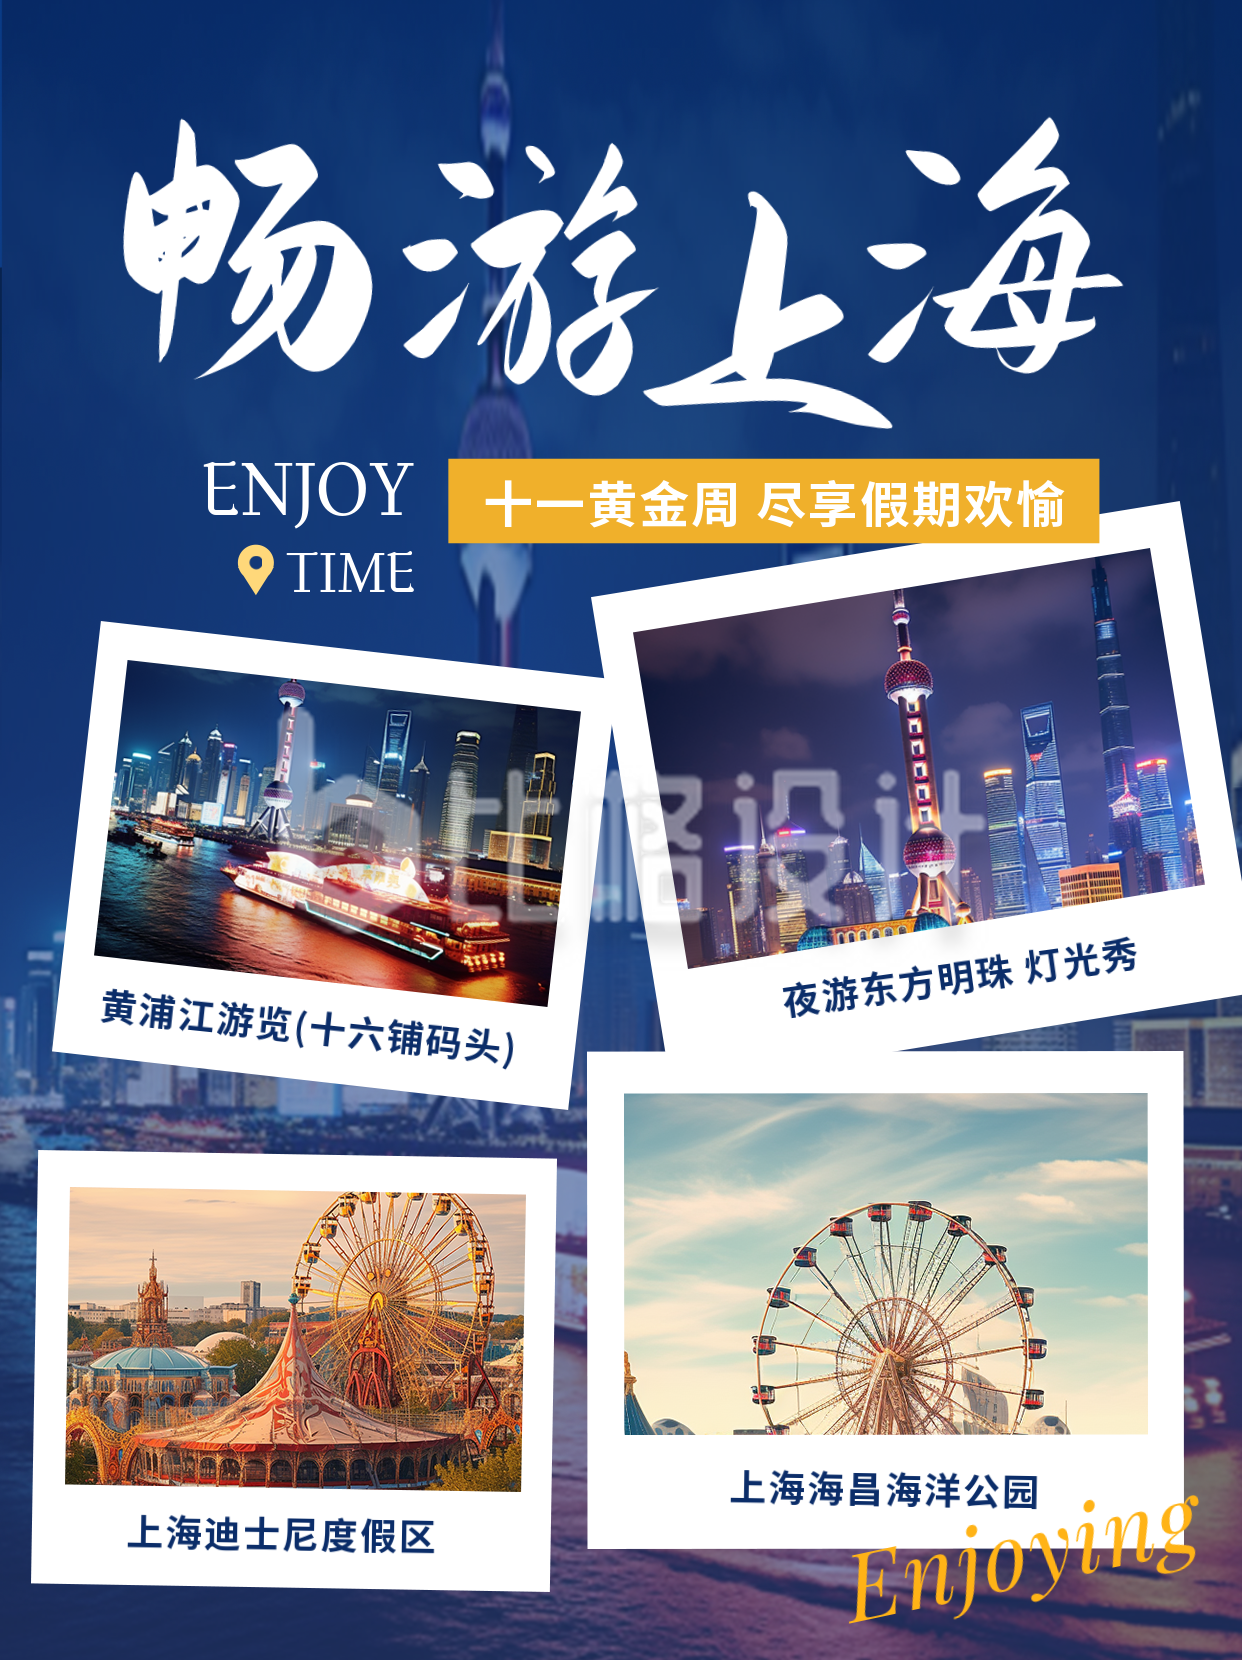 上海旅游景点推荐小红书封面